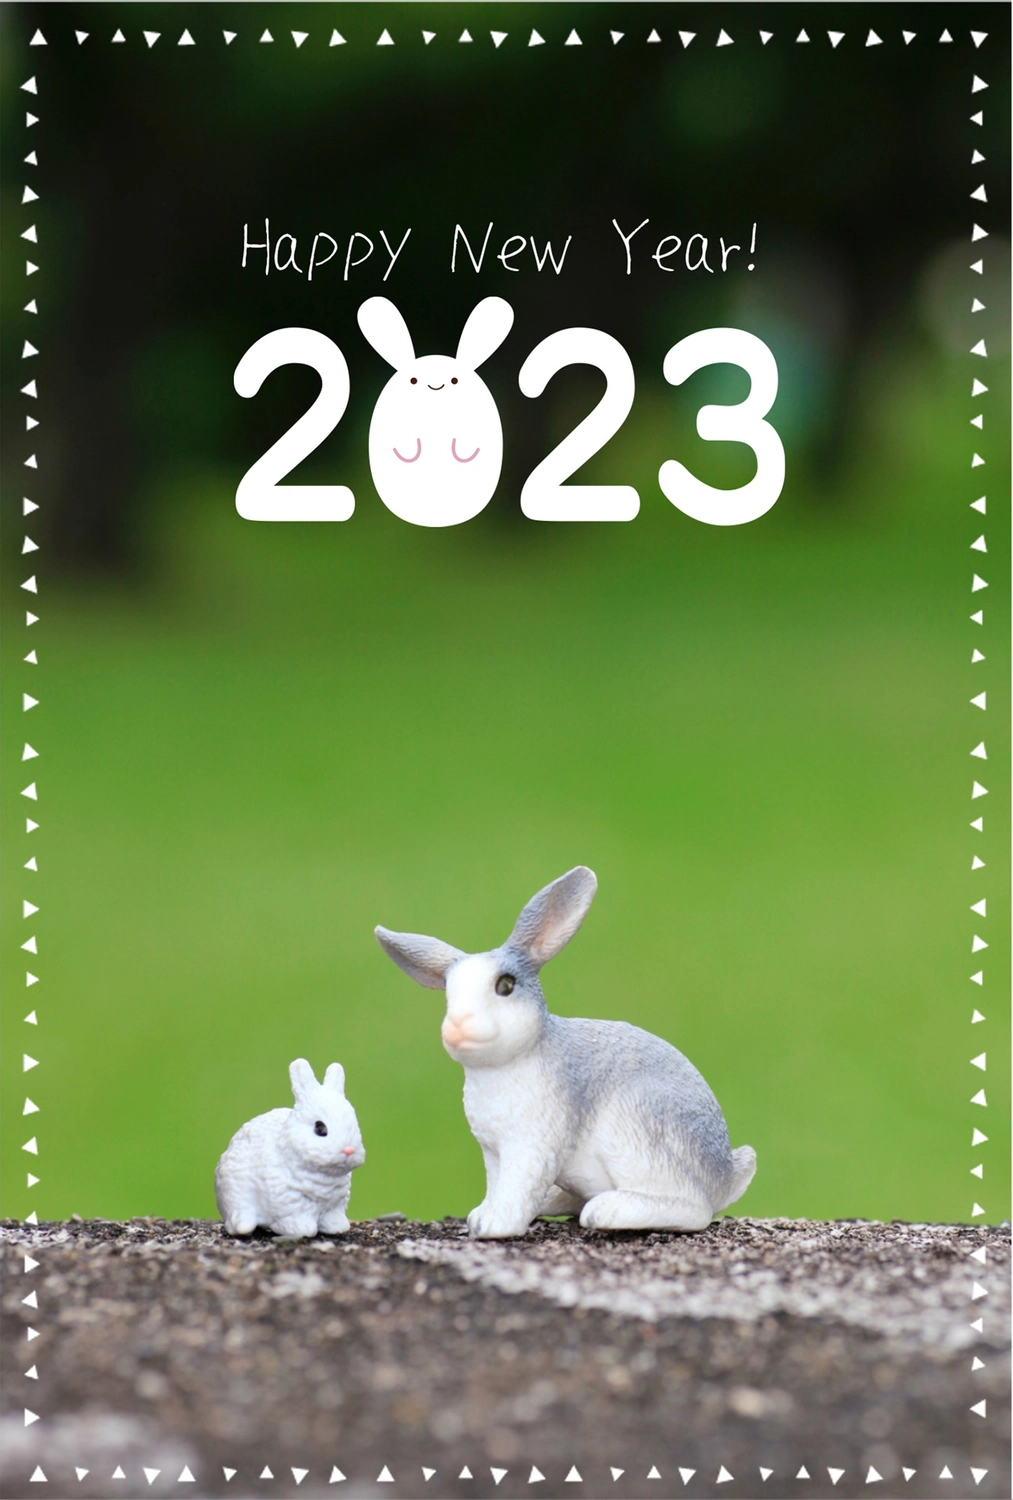 シュライヒ　2匹のうさぎ　うさぎロゴで2023, 年賀状, 屋外, 令和5年, 年賀状テンプレート